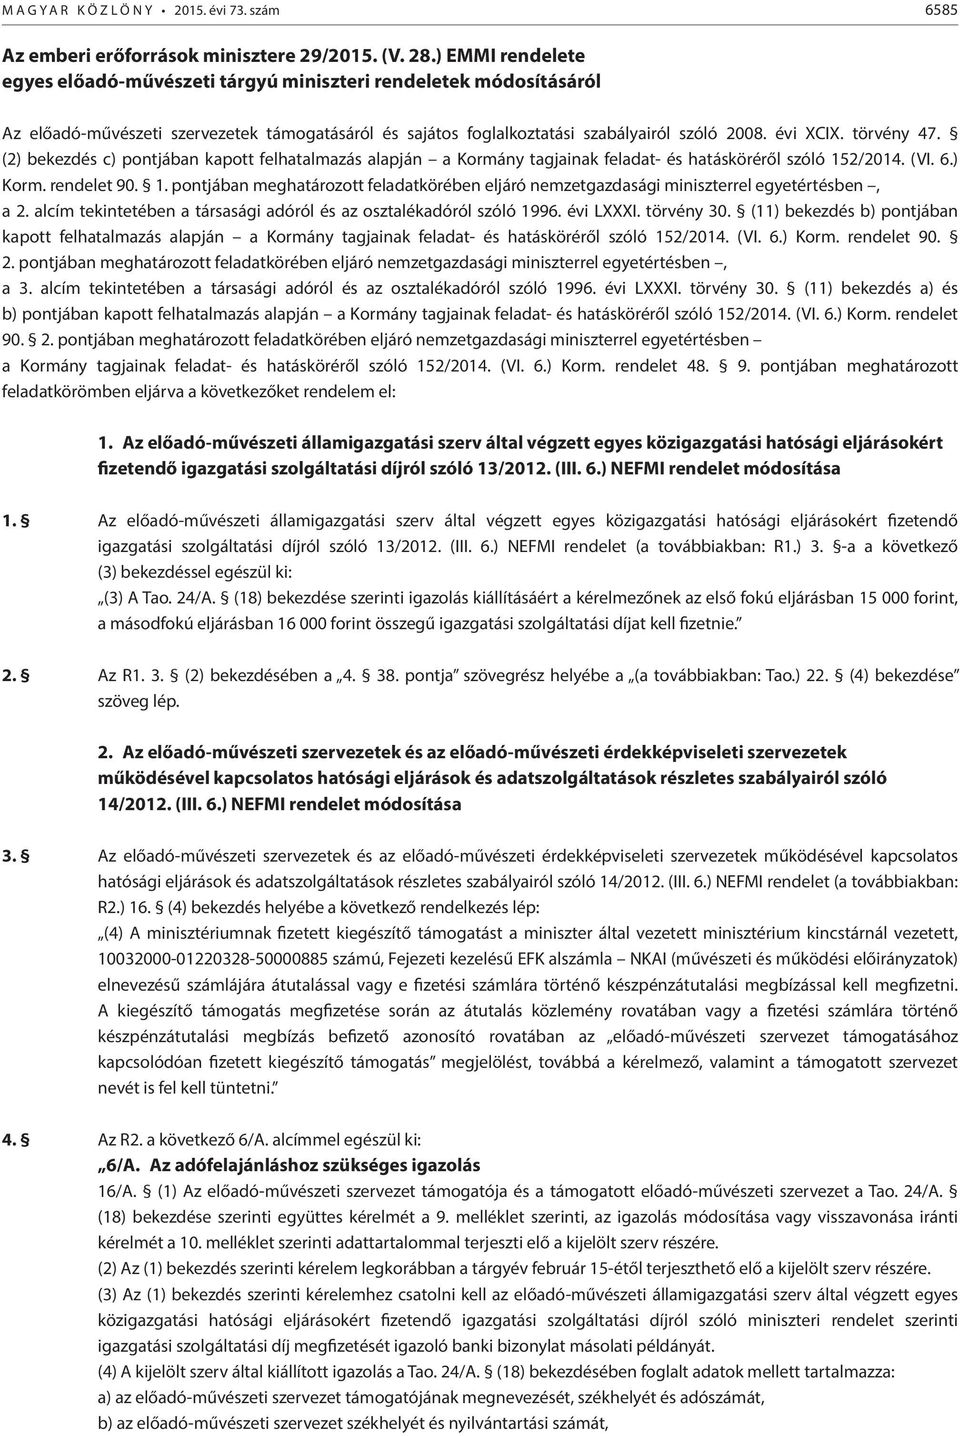 törvény 47. (2) bekezdés c) pontjában kapott felhatalmazás alapján a Kormány tagjainak feladat- és hatásköréről szóló 15